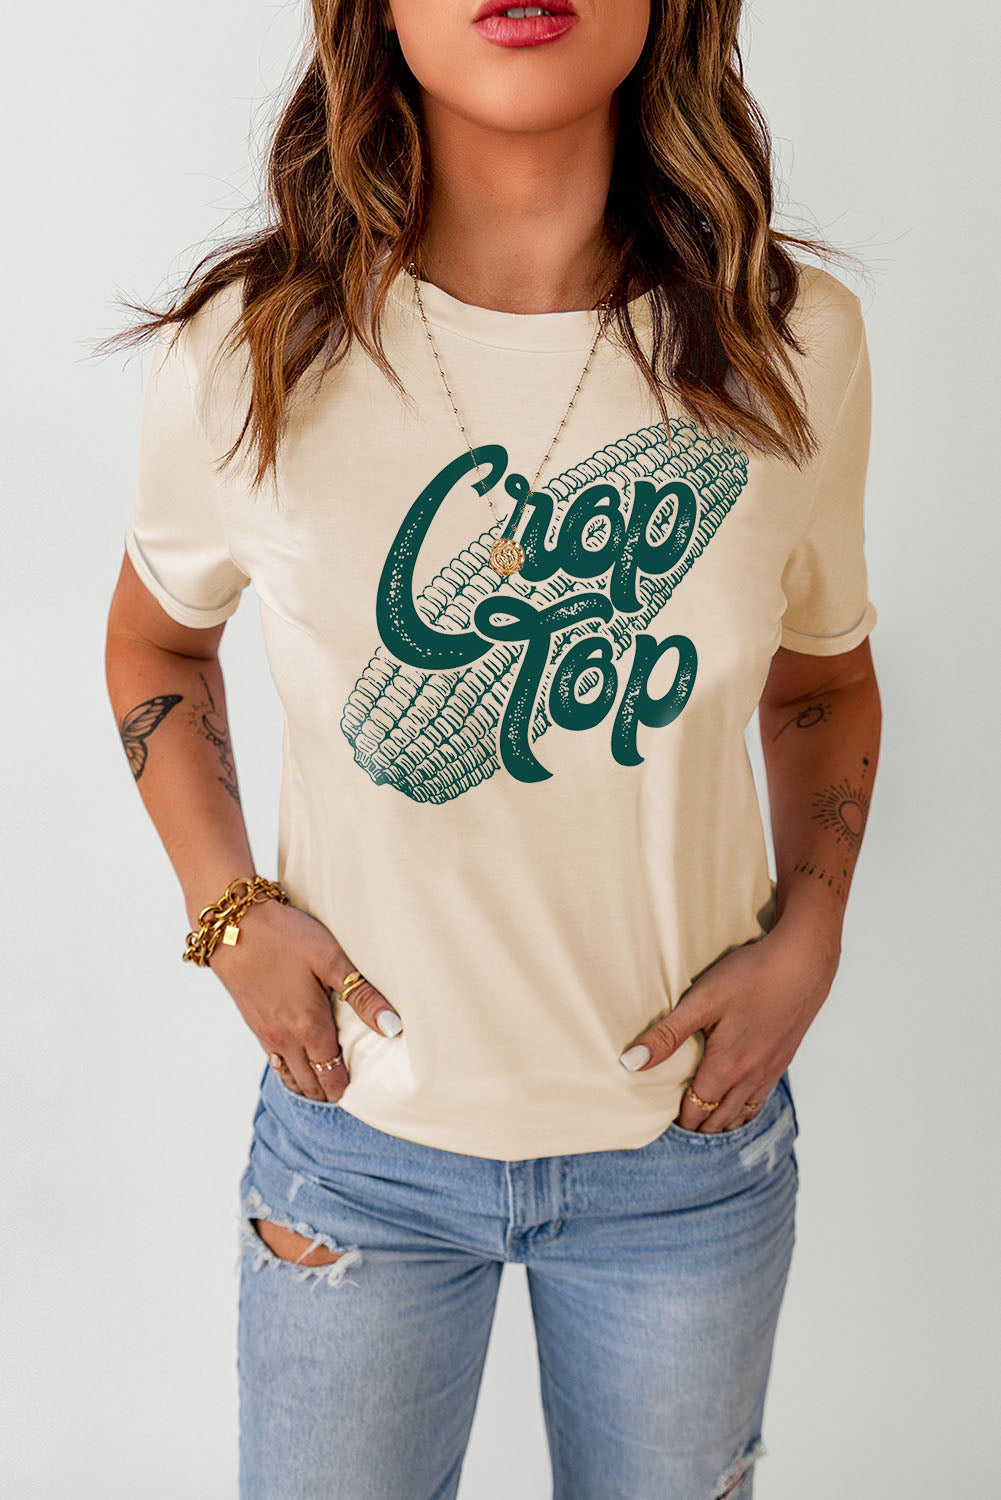 Corn Crop Top Graphic Tee